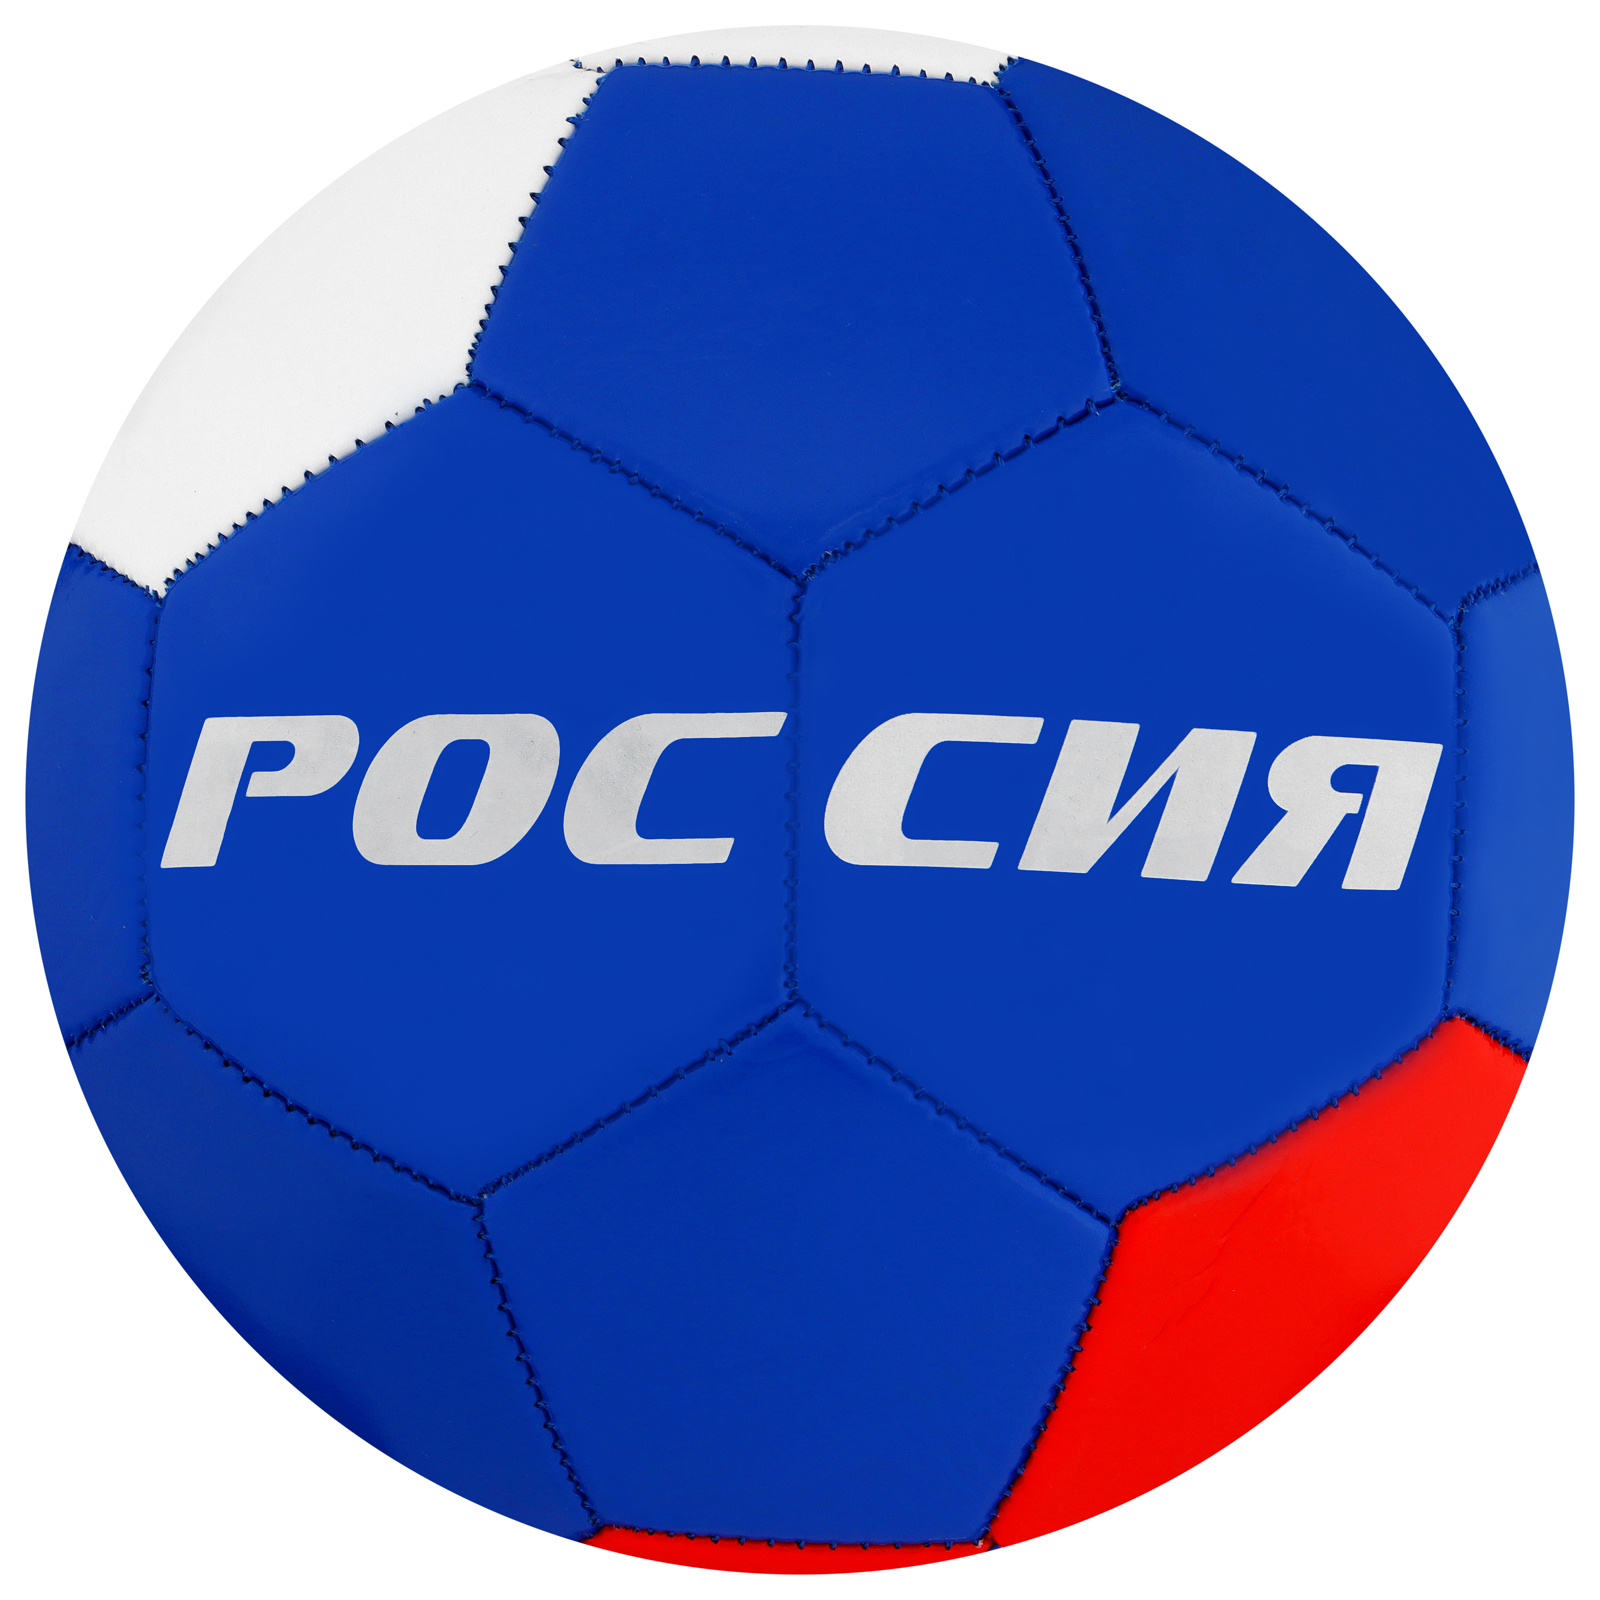 Мяч футбольный ONLYTOP «Россия», PVC, машинная сшивка, 32 панели, р. 5  (487616) - Купить по цене от 379.00 руб. | Интернет магазин SIMA-LAND.RU